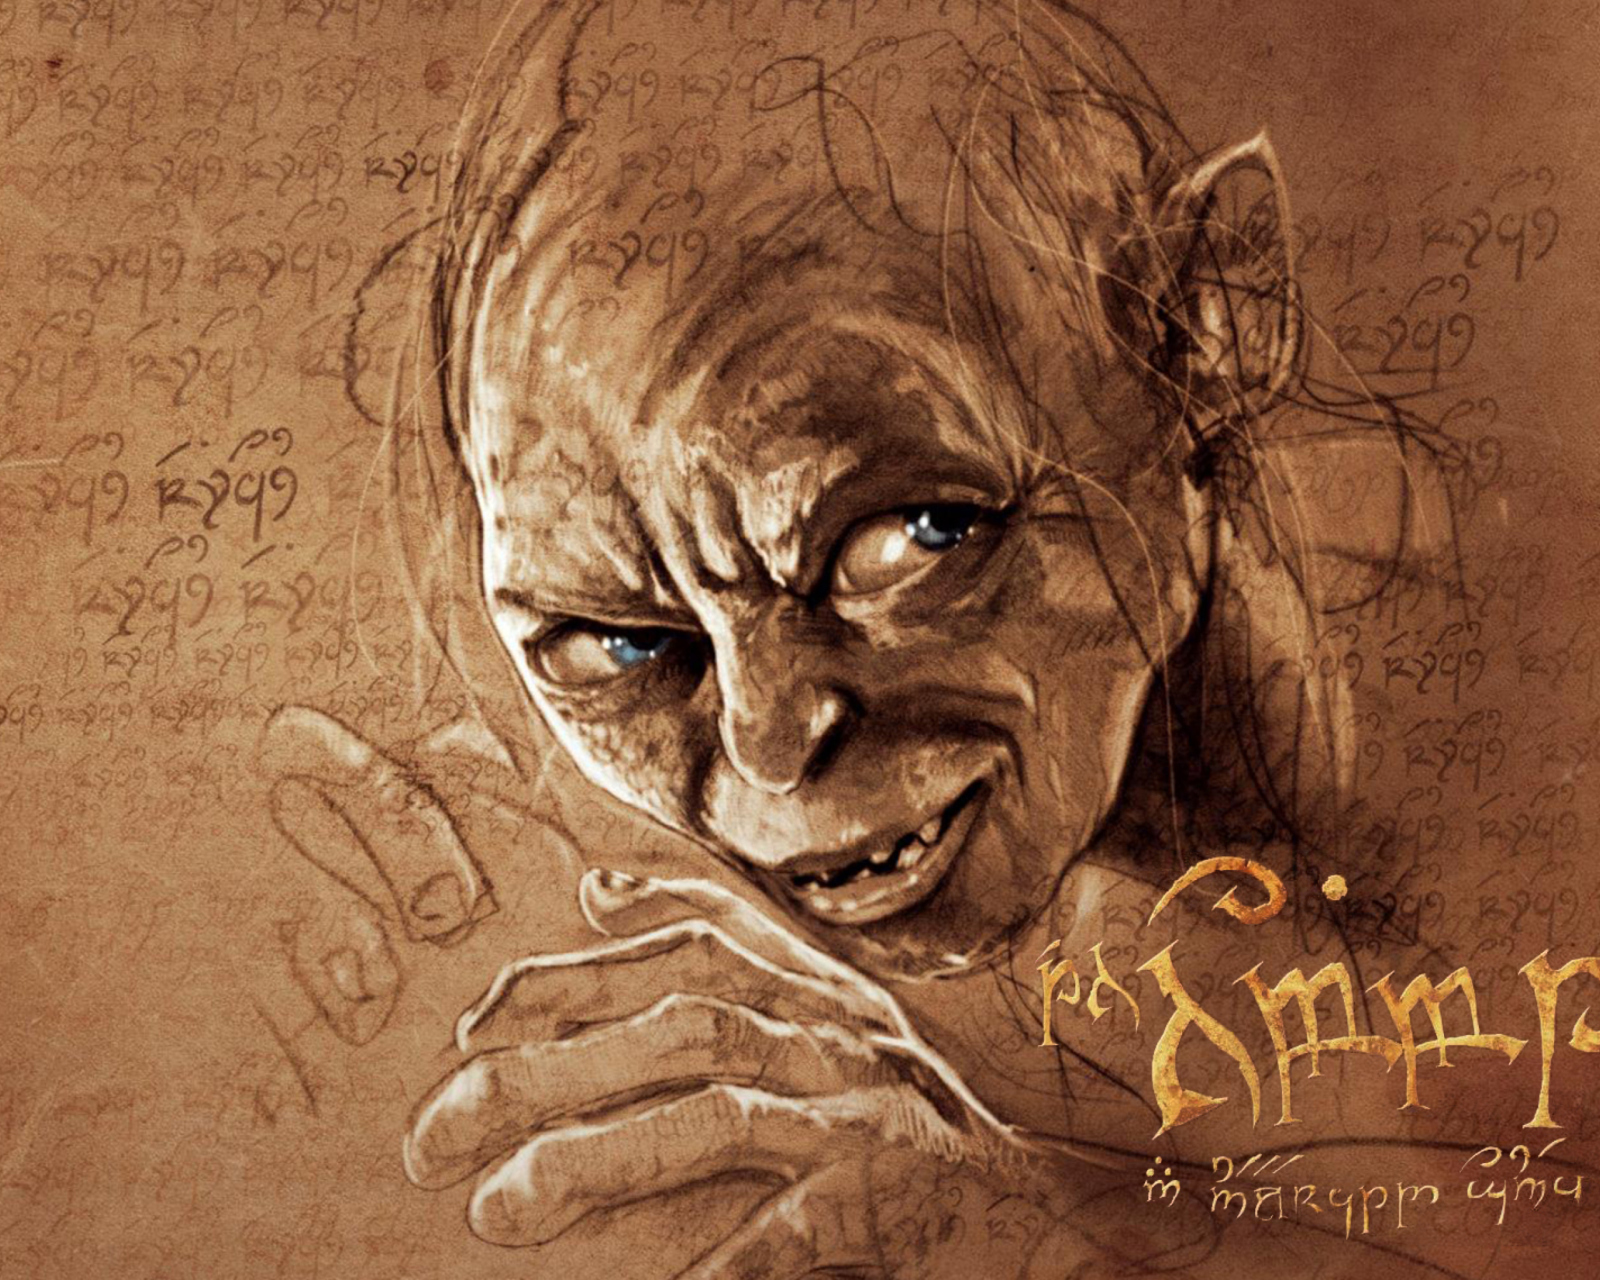 The Hobbit Gollum Artwork screenshot #1 1600x1280